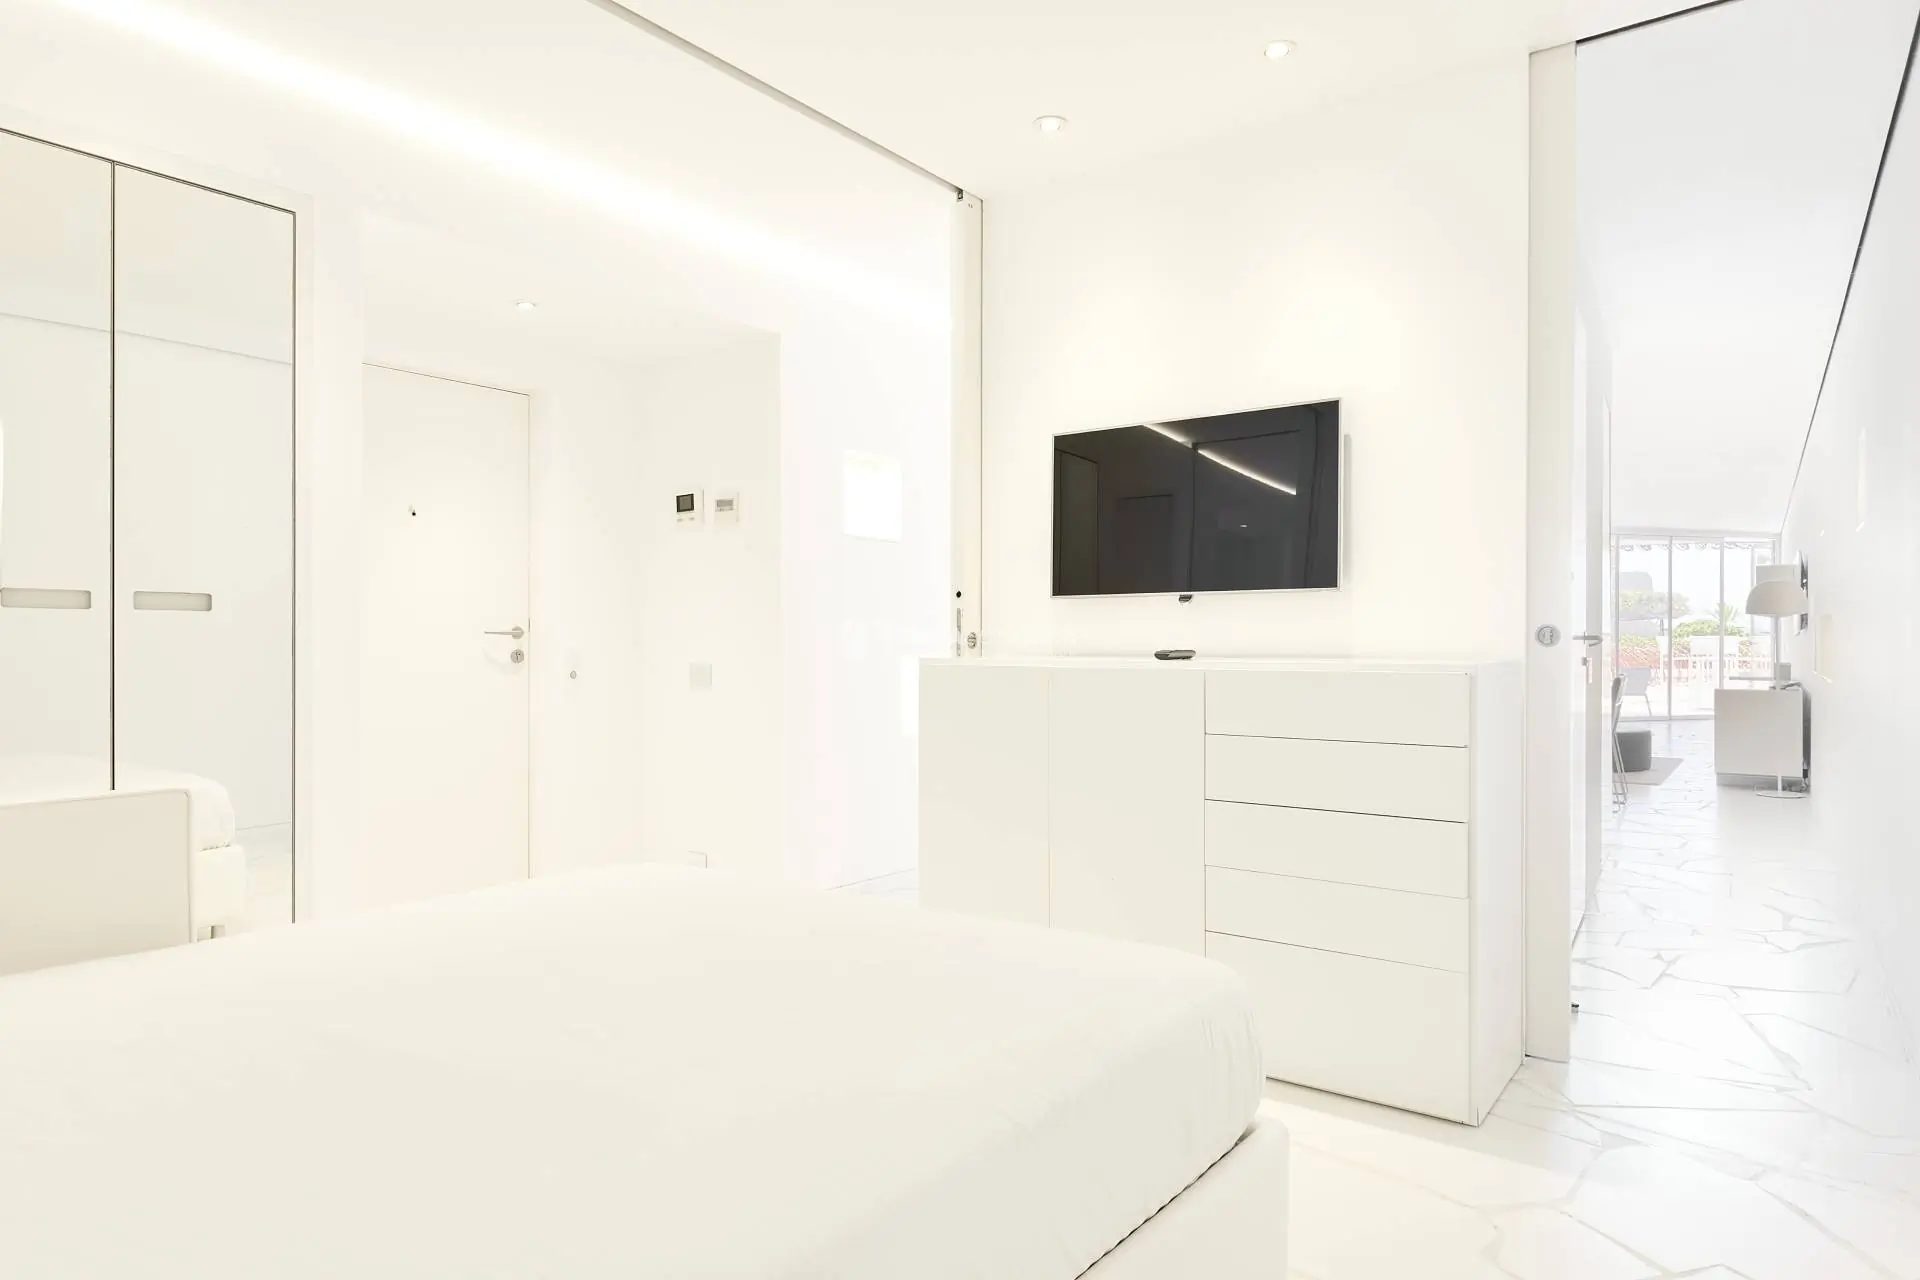 1051 Las Boas de Ibiza  Louer un appartement de luxe  2 chambres